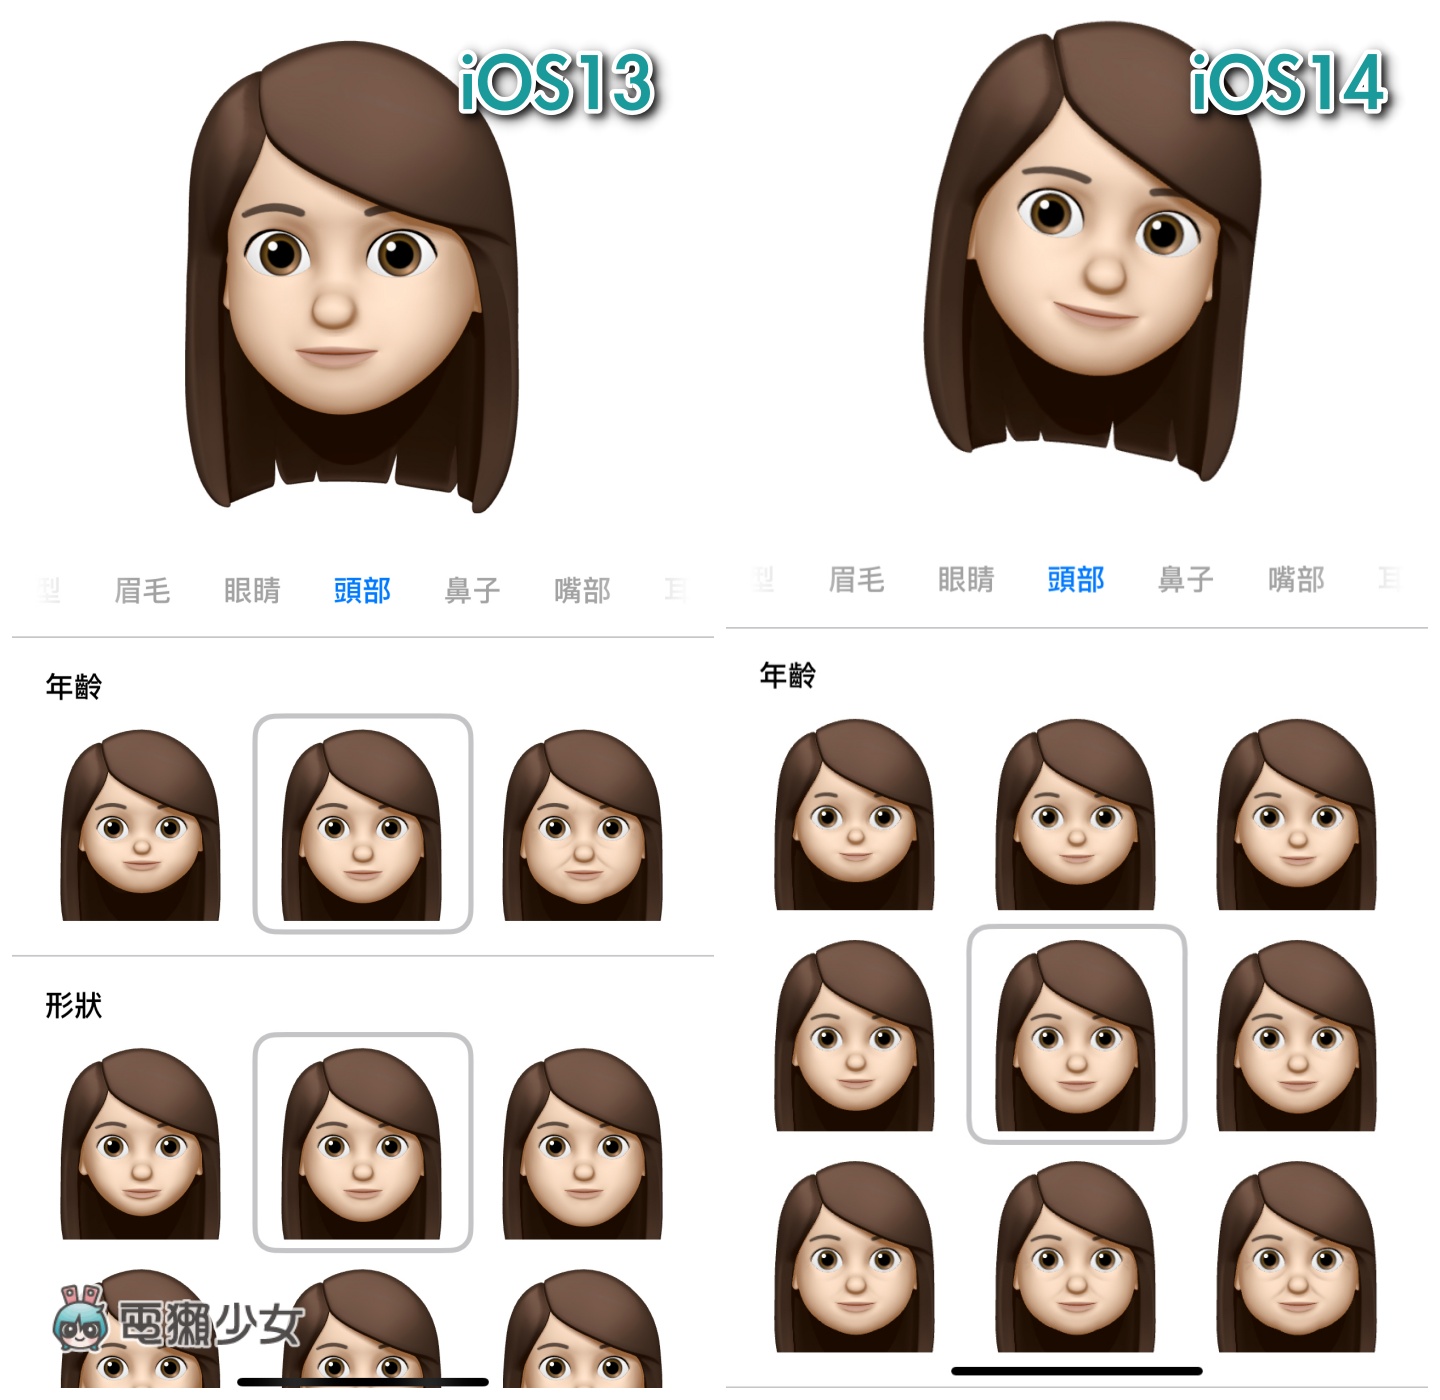 iOS 14 Memoji 更新整理！可以戴口罩！年齡、髮型、頭飾選擇都變多！還新增三款超可愛動態貼圖